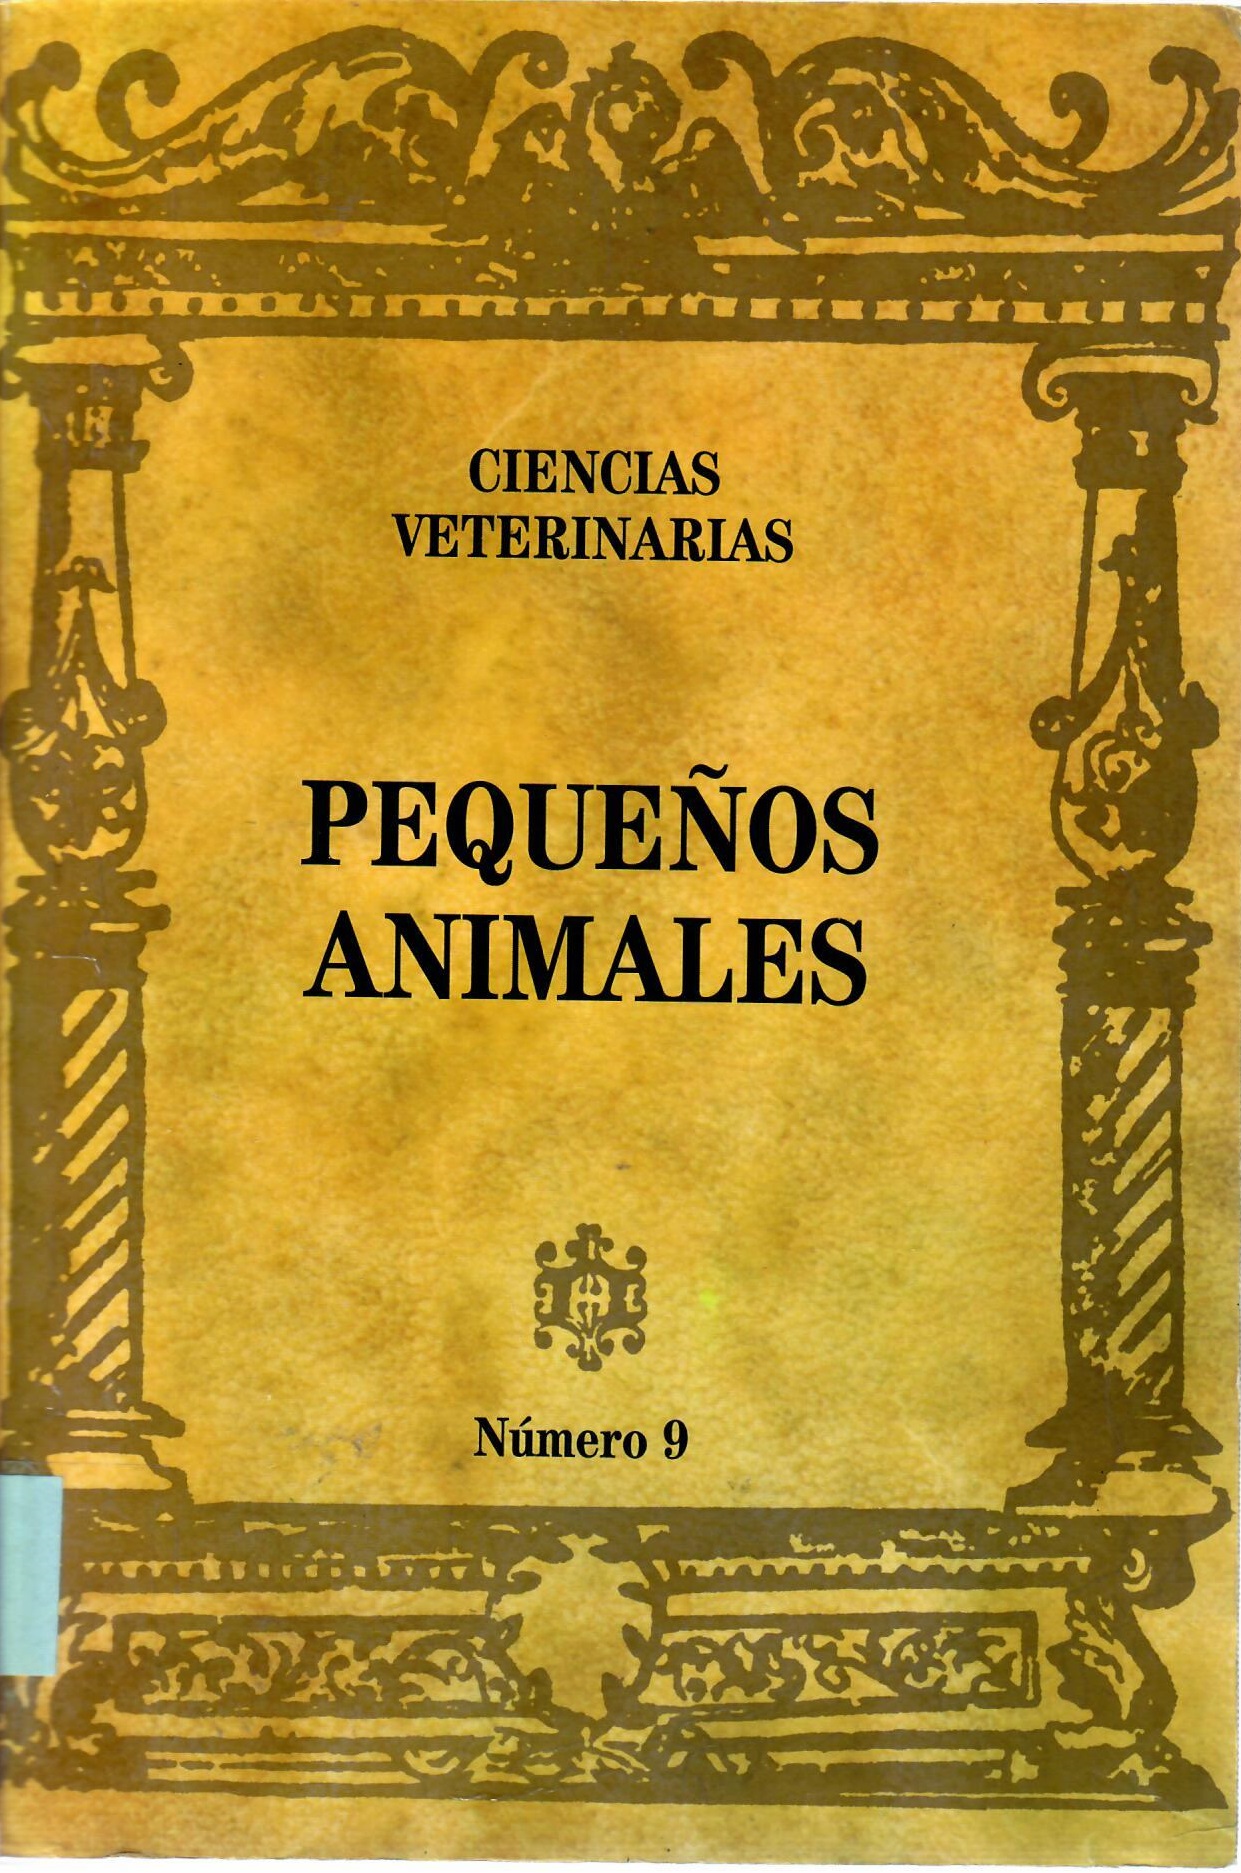 Imagen de portada del libro Pequeños animales